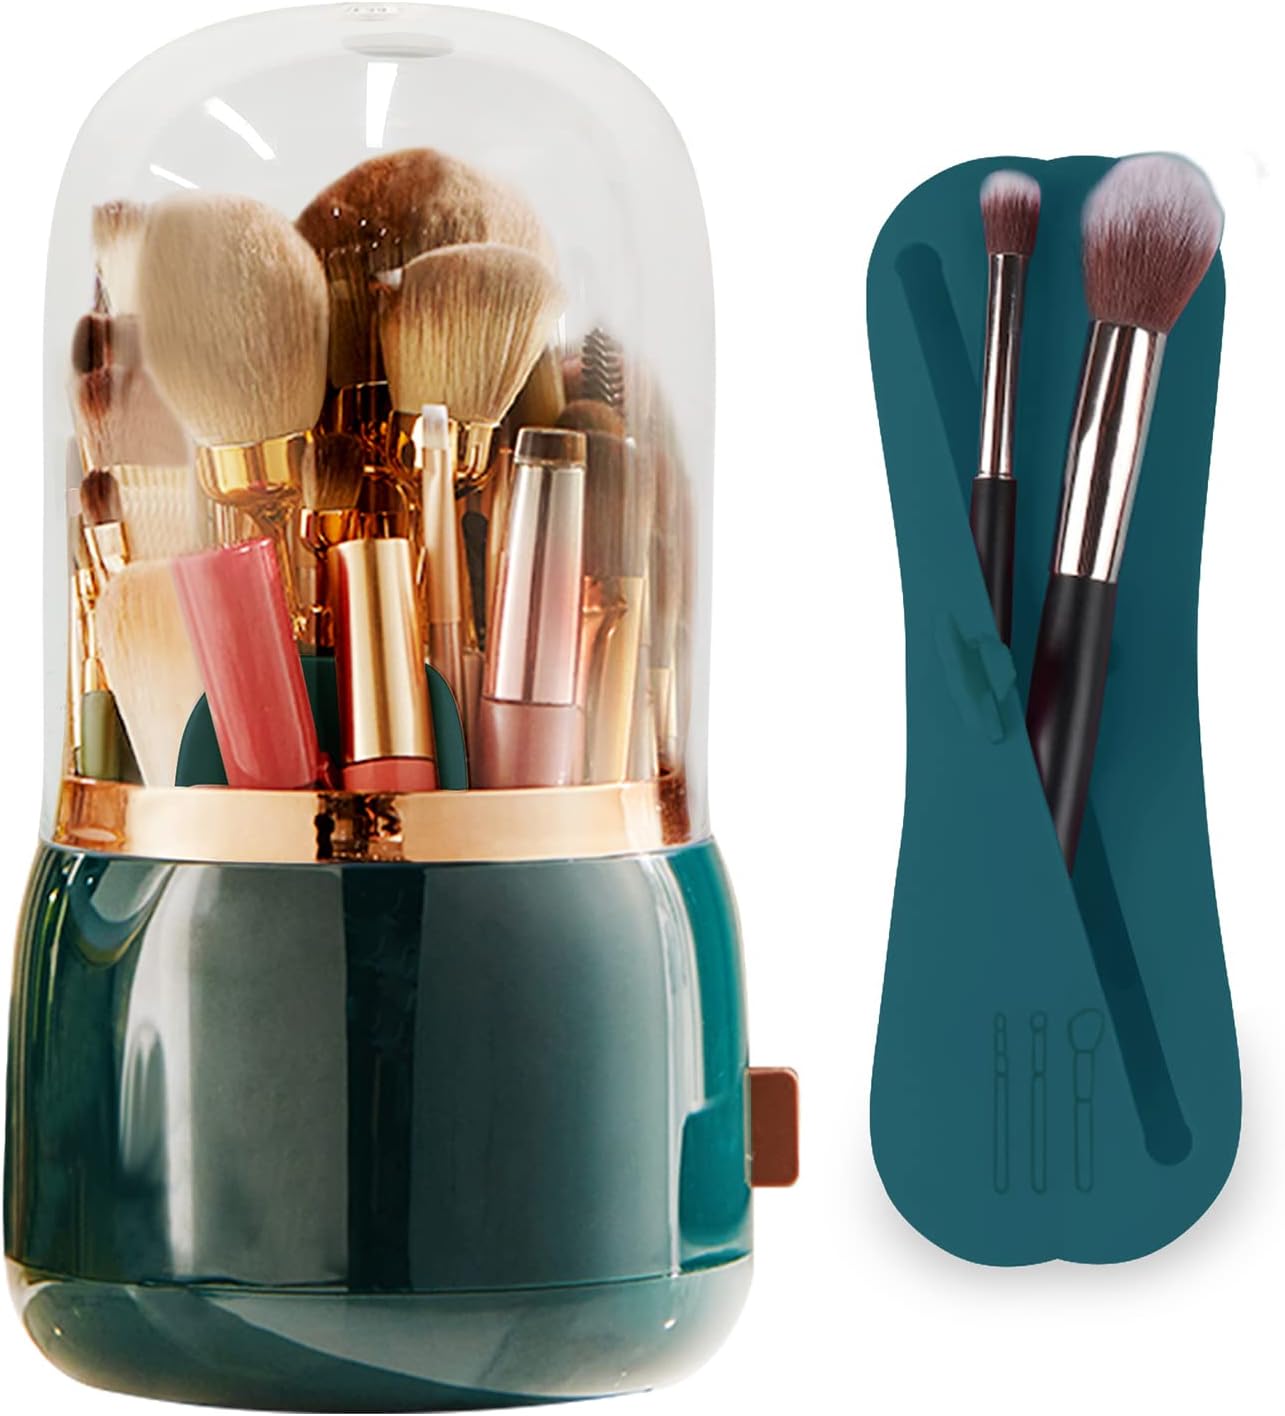 Blushbees® 360 Rotating Makeup Brush Holder - 2 Pack (Light Green)